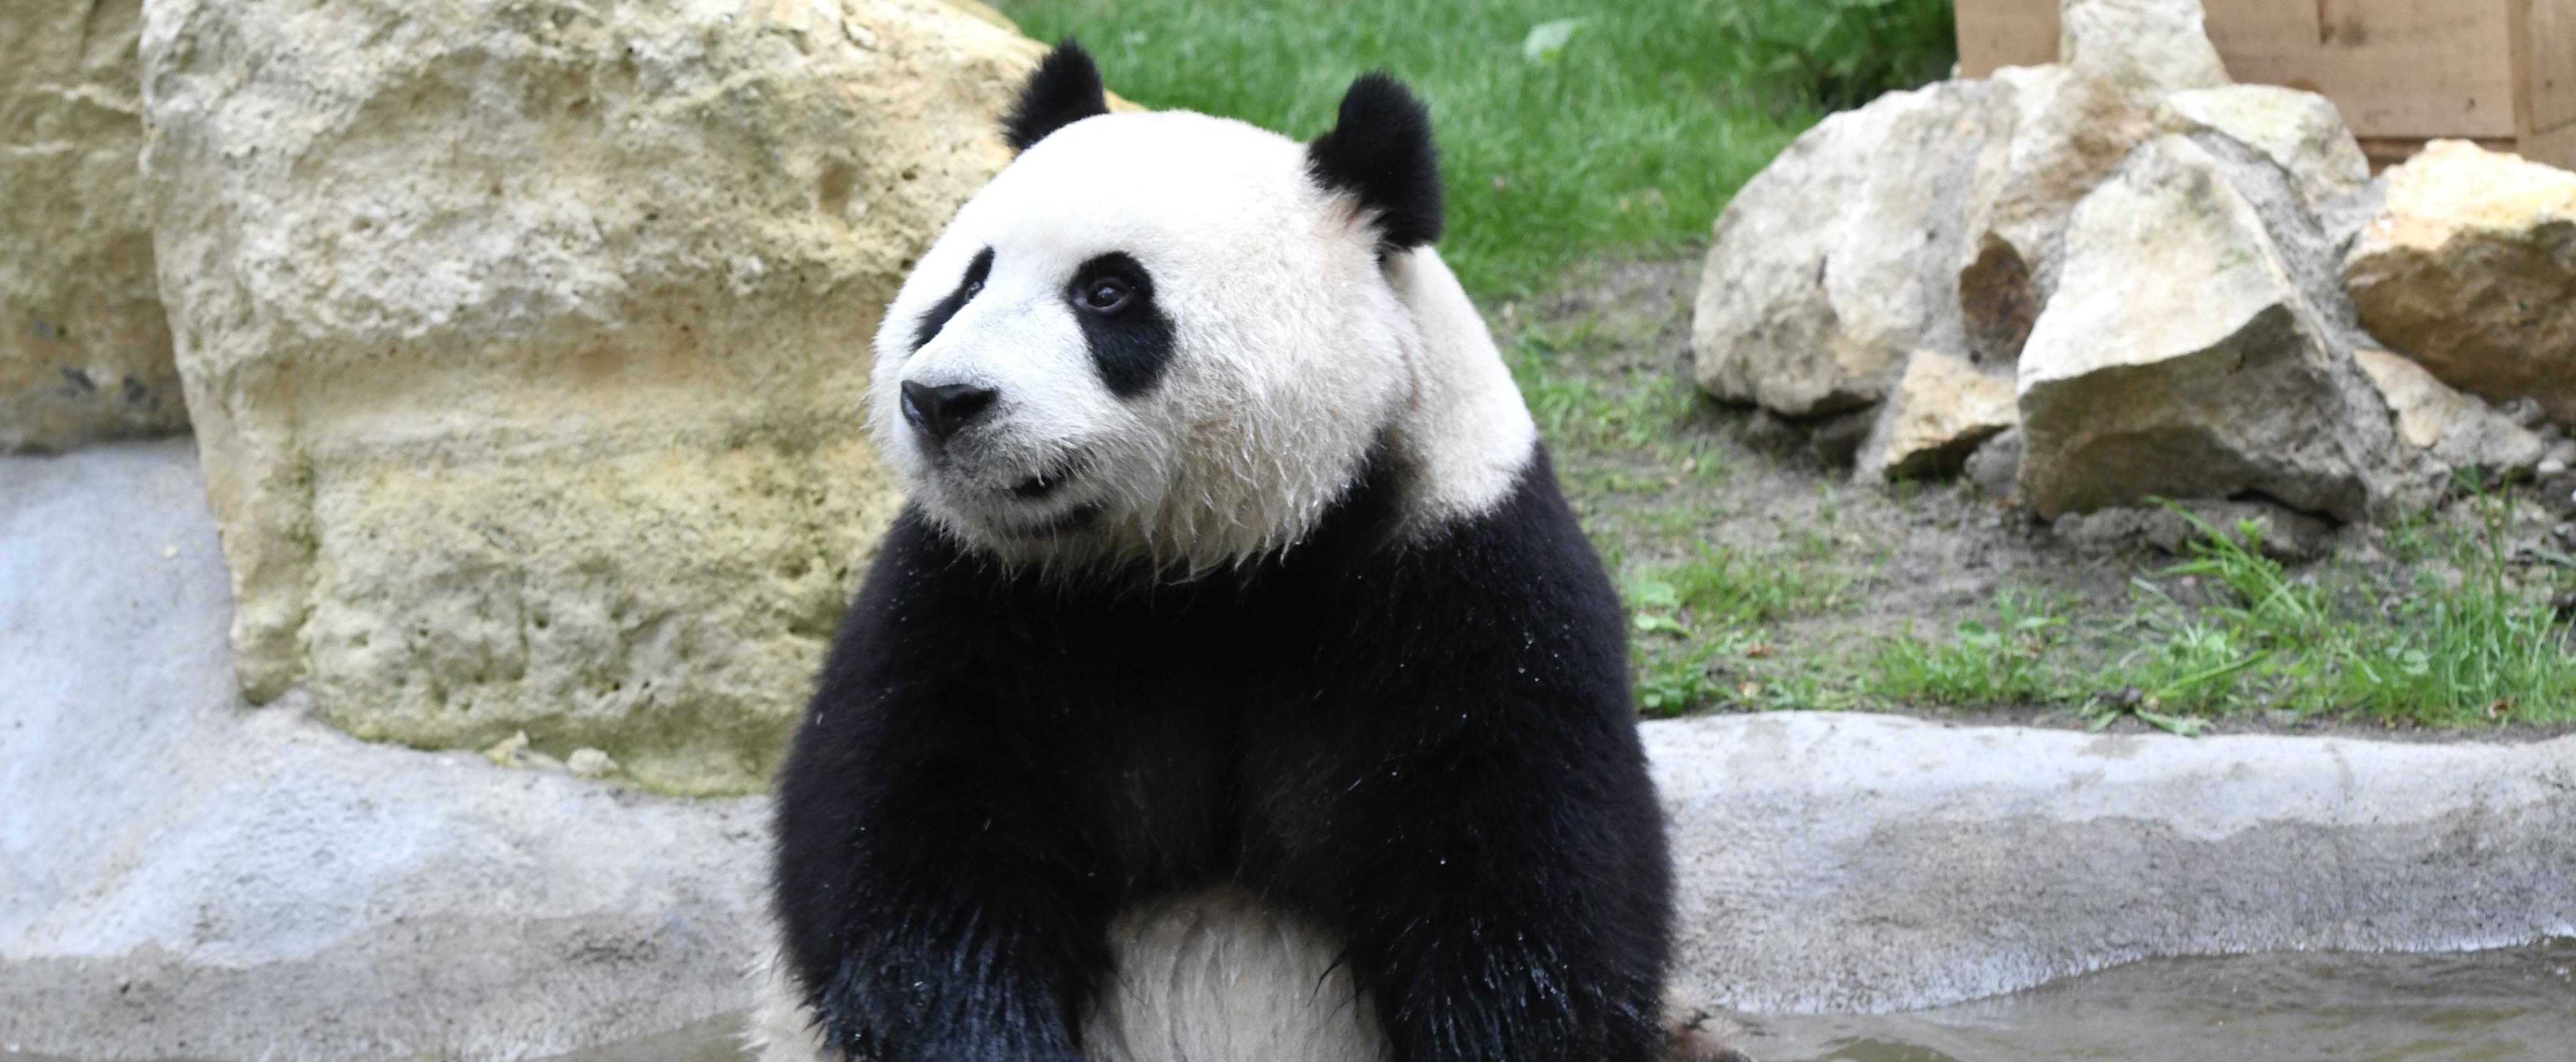 Knuffelen met panda's en nog 5 beroepen met dieren waarvan je 't bestaan niet wist